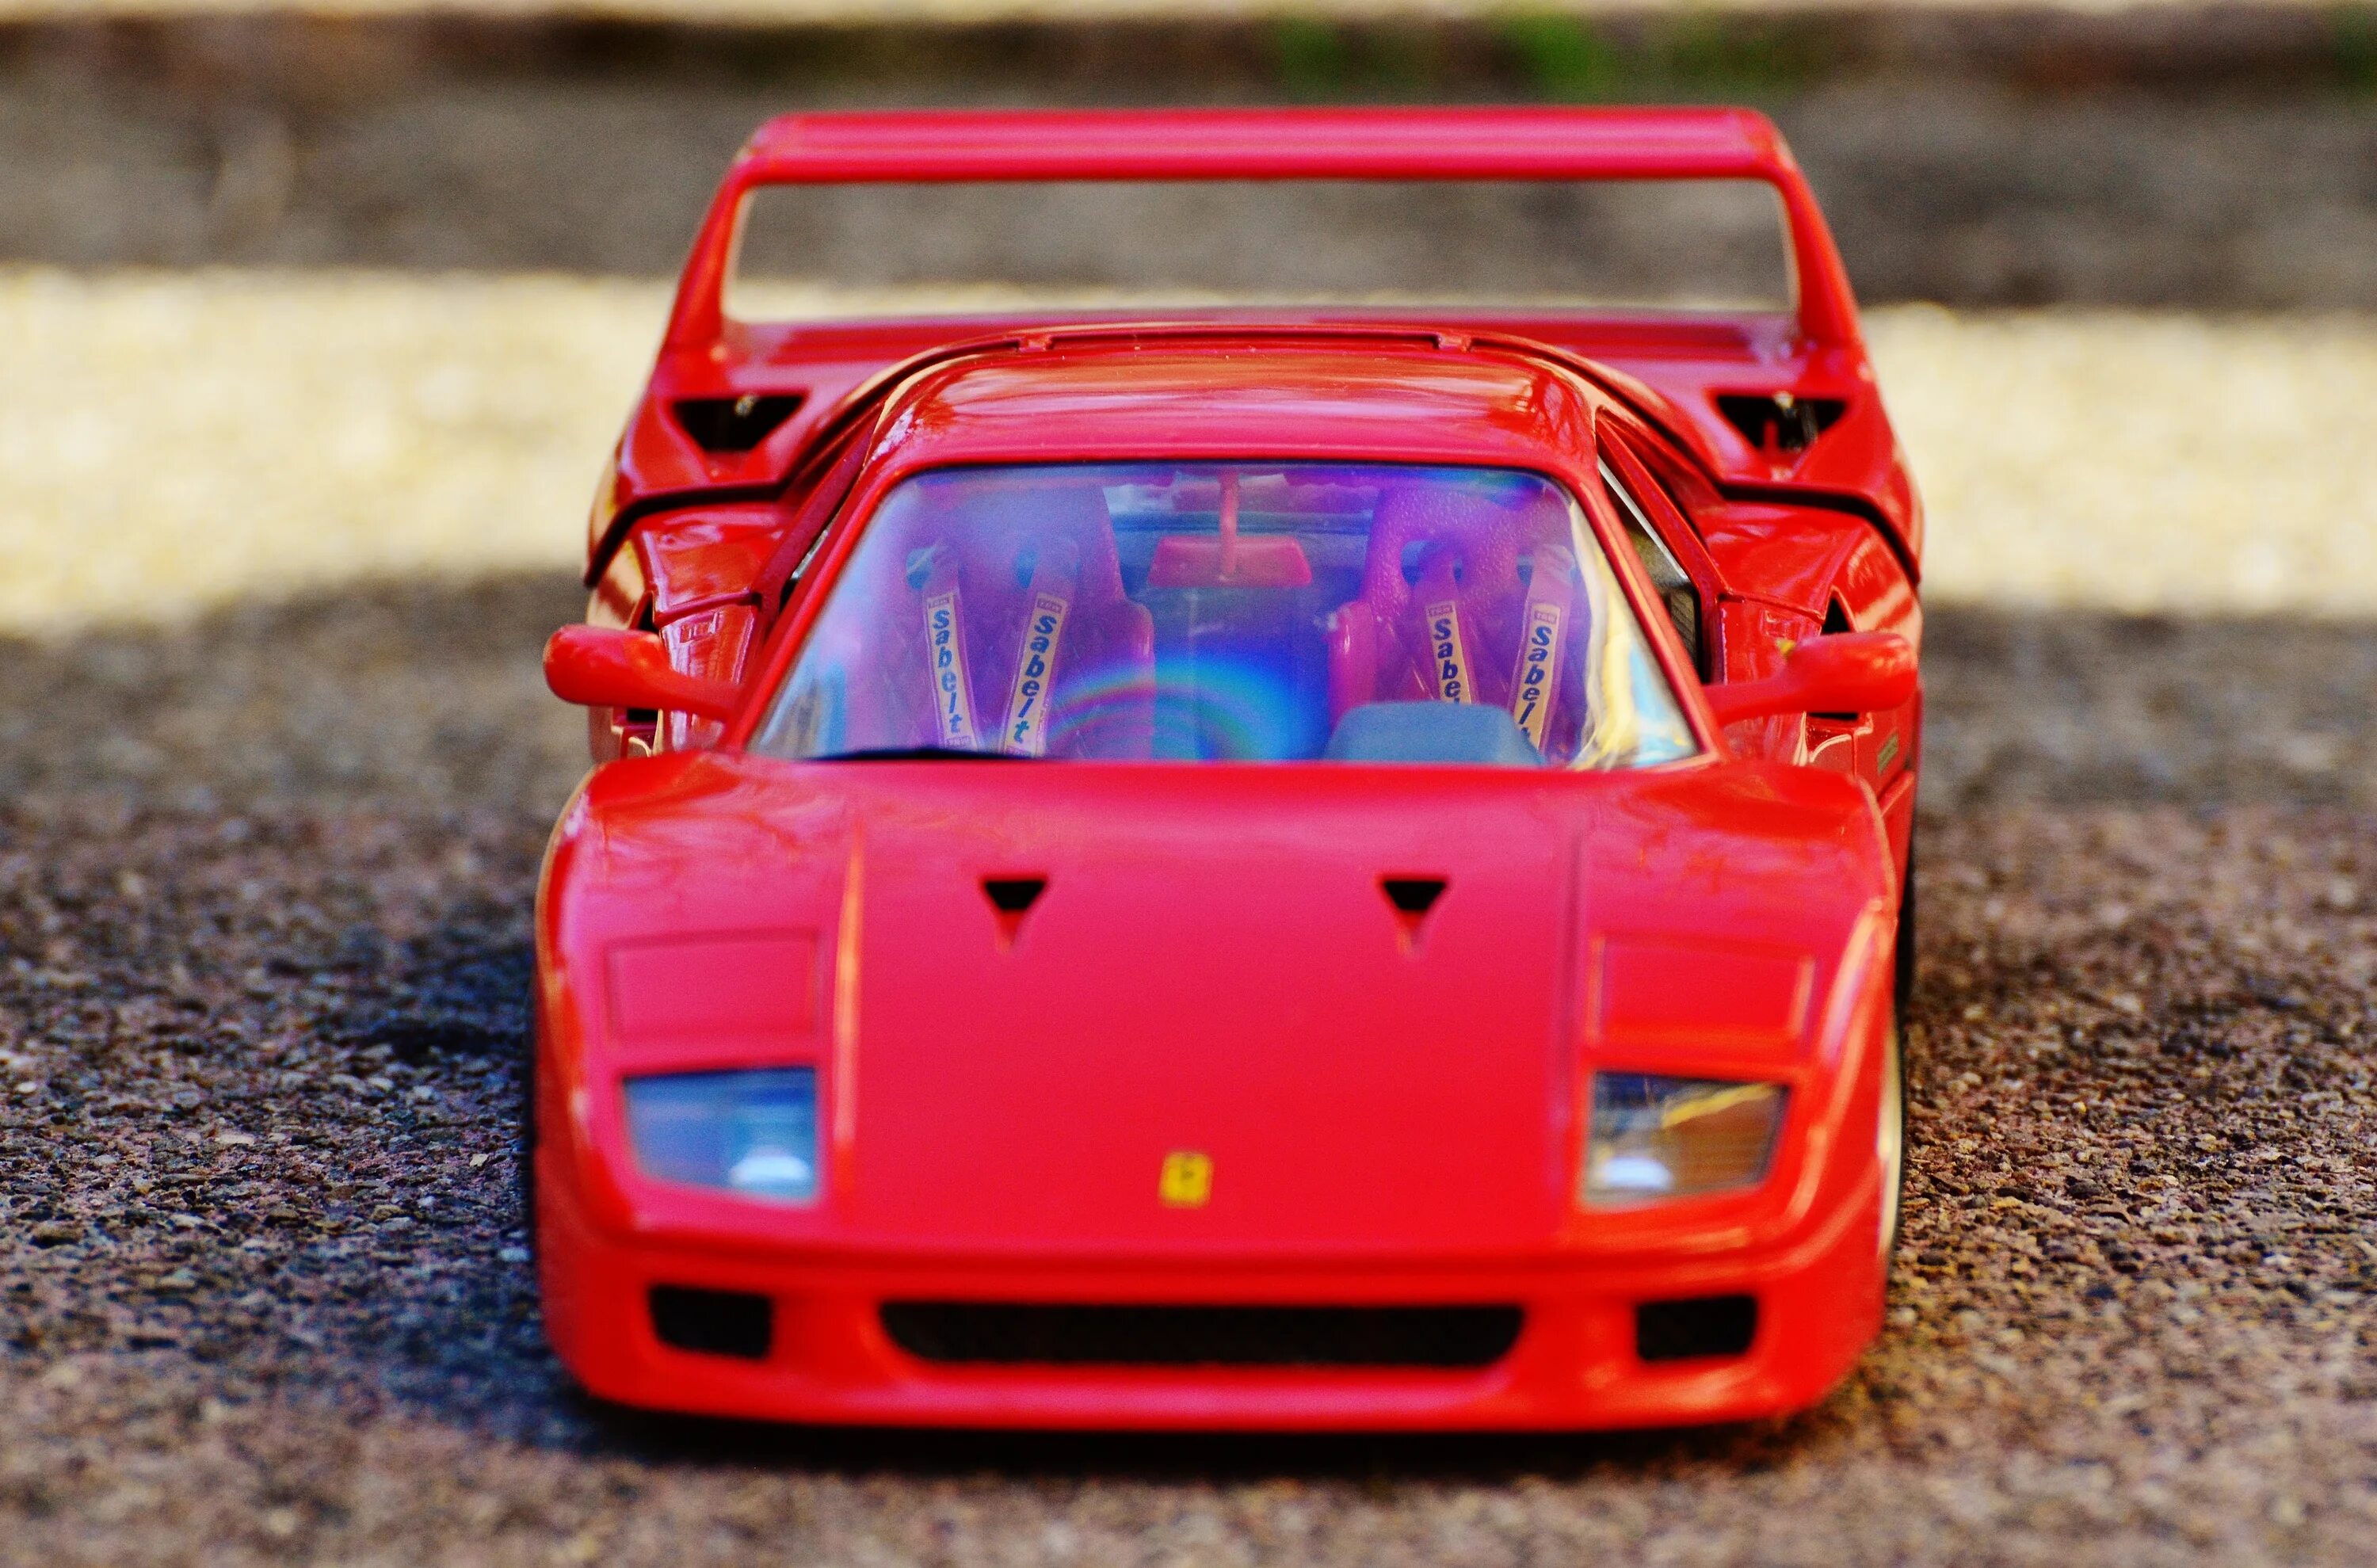 Едет красная машинка. Спортивная машина вид спереди. Феррари гоночная модель. Ferrari f40 вид сверху. Едет красная машина.